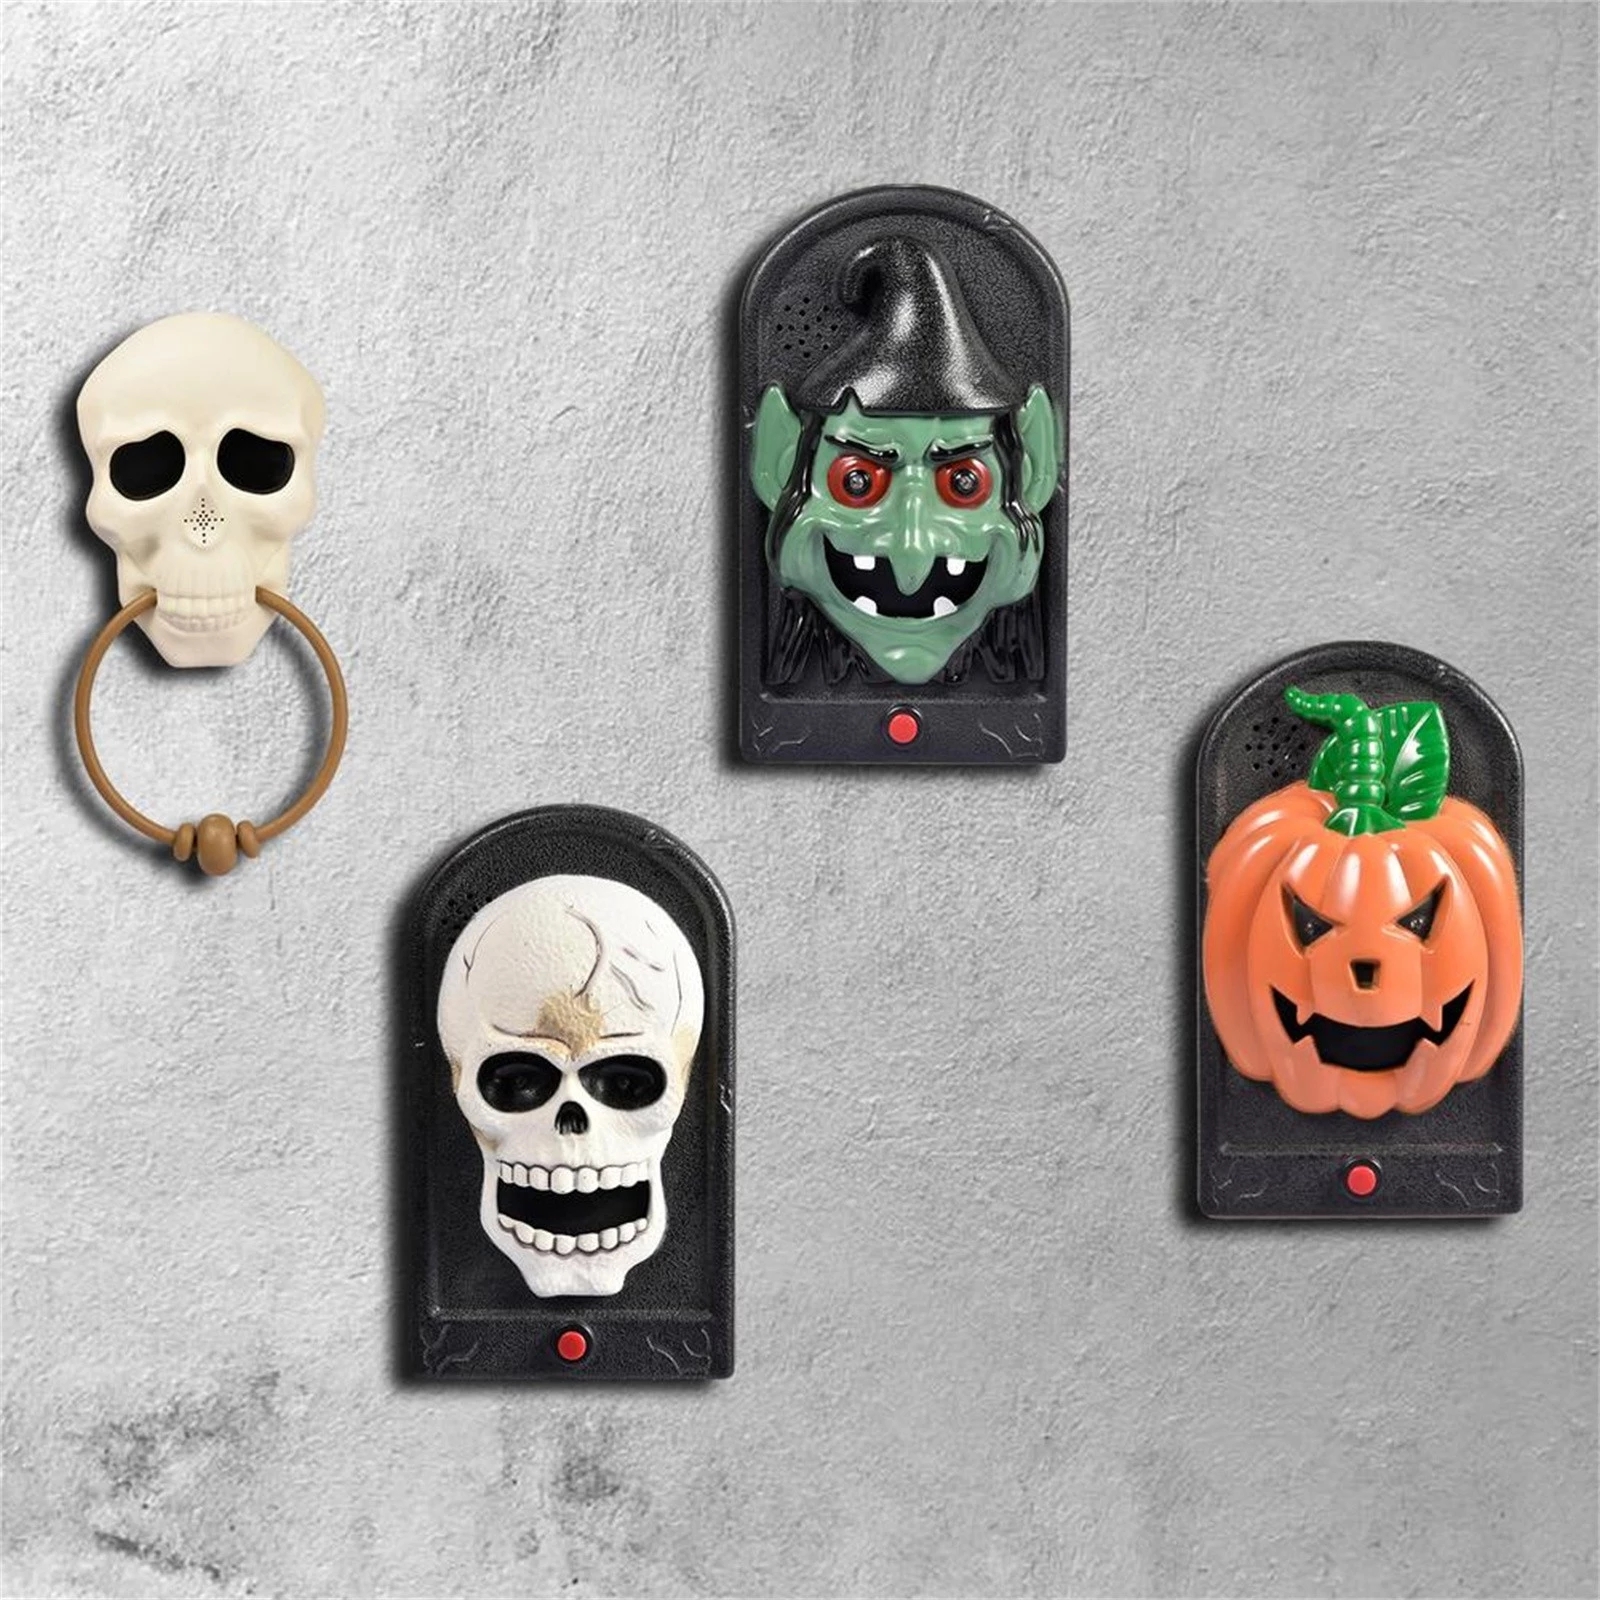 Halloween-Doorbell-Glowing-Sounding-Horror-Toy-Welcome-Door-Hanging-Skull-Decora-Horror-Props-Glowin-1907298-1